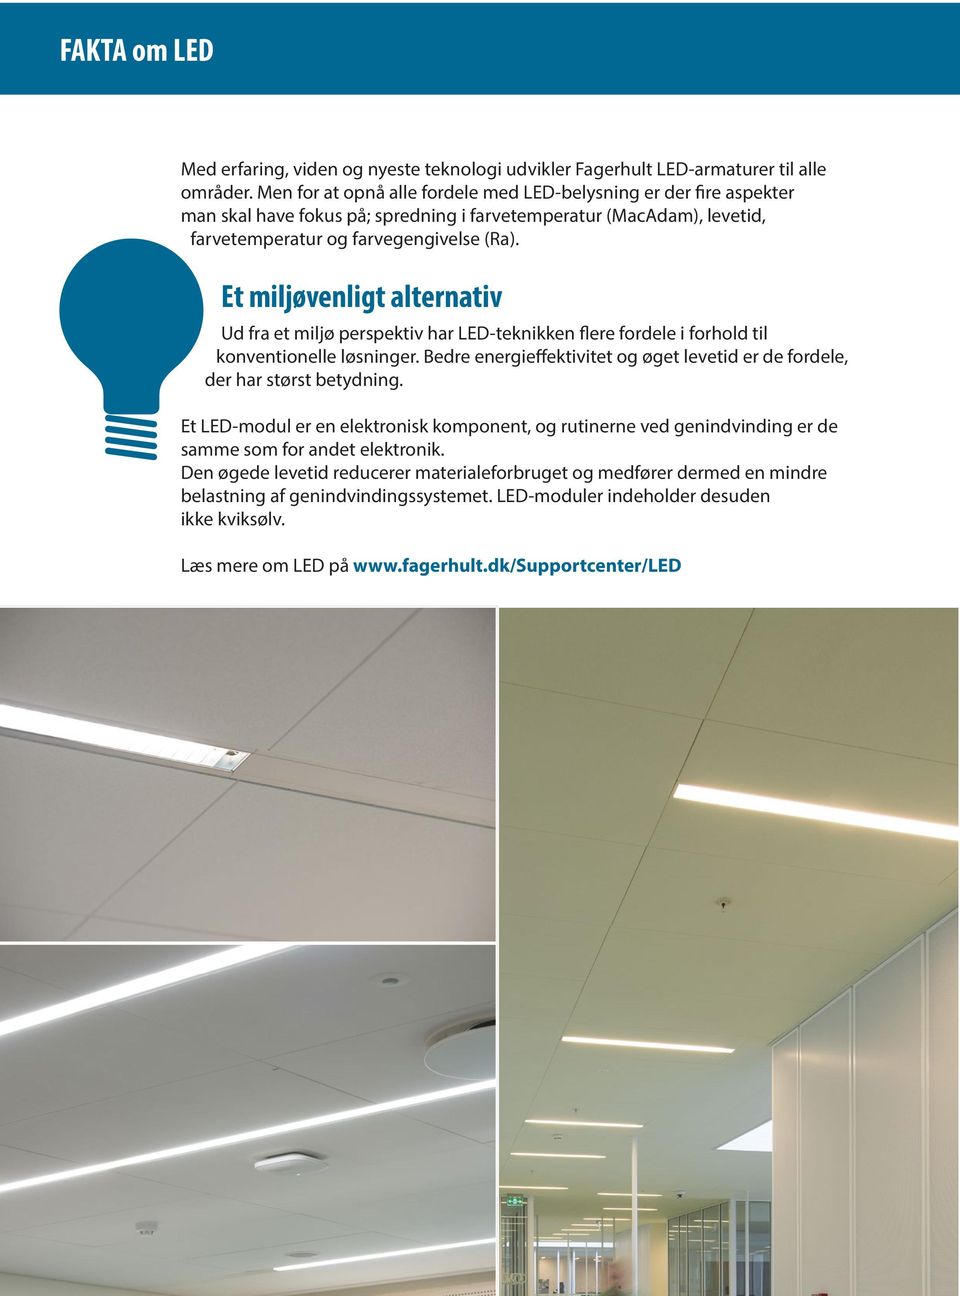 Et miljøvenligt alternativ Ud fra et miljø perspektiv har LED-teknikken flere fordele i forhold til konventionelle løsninger.